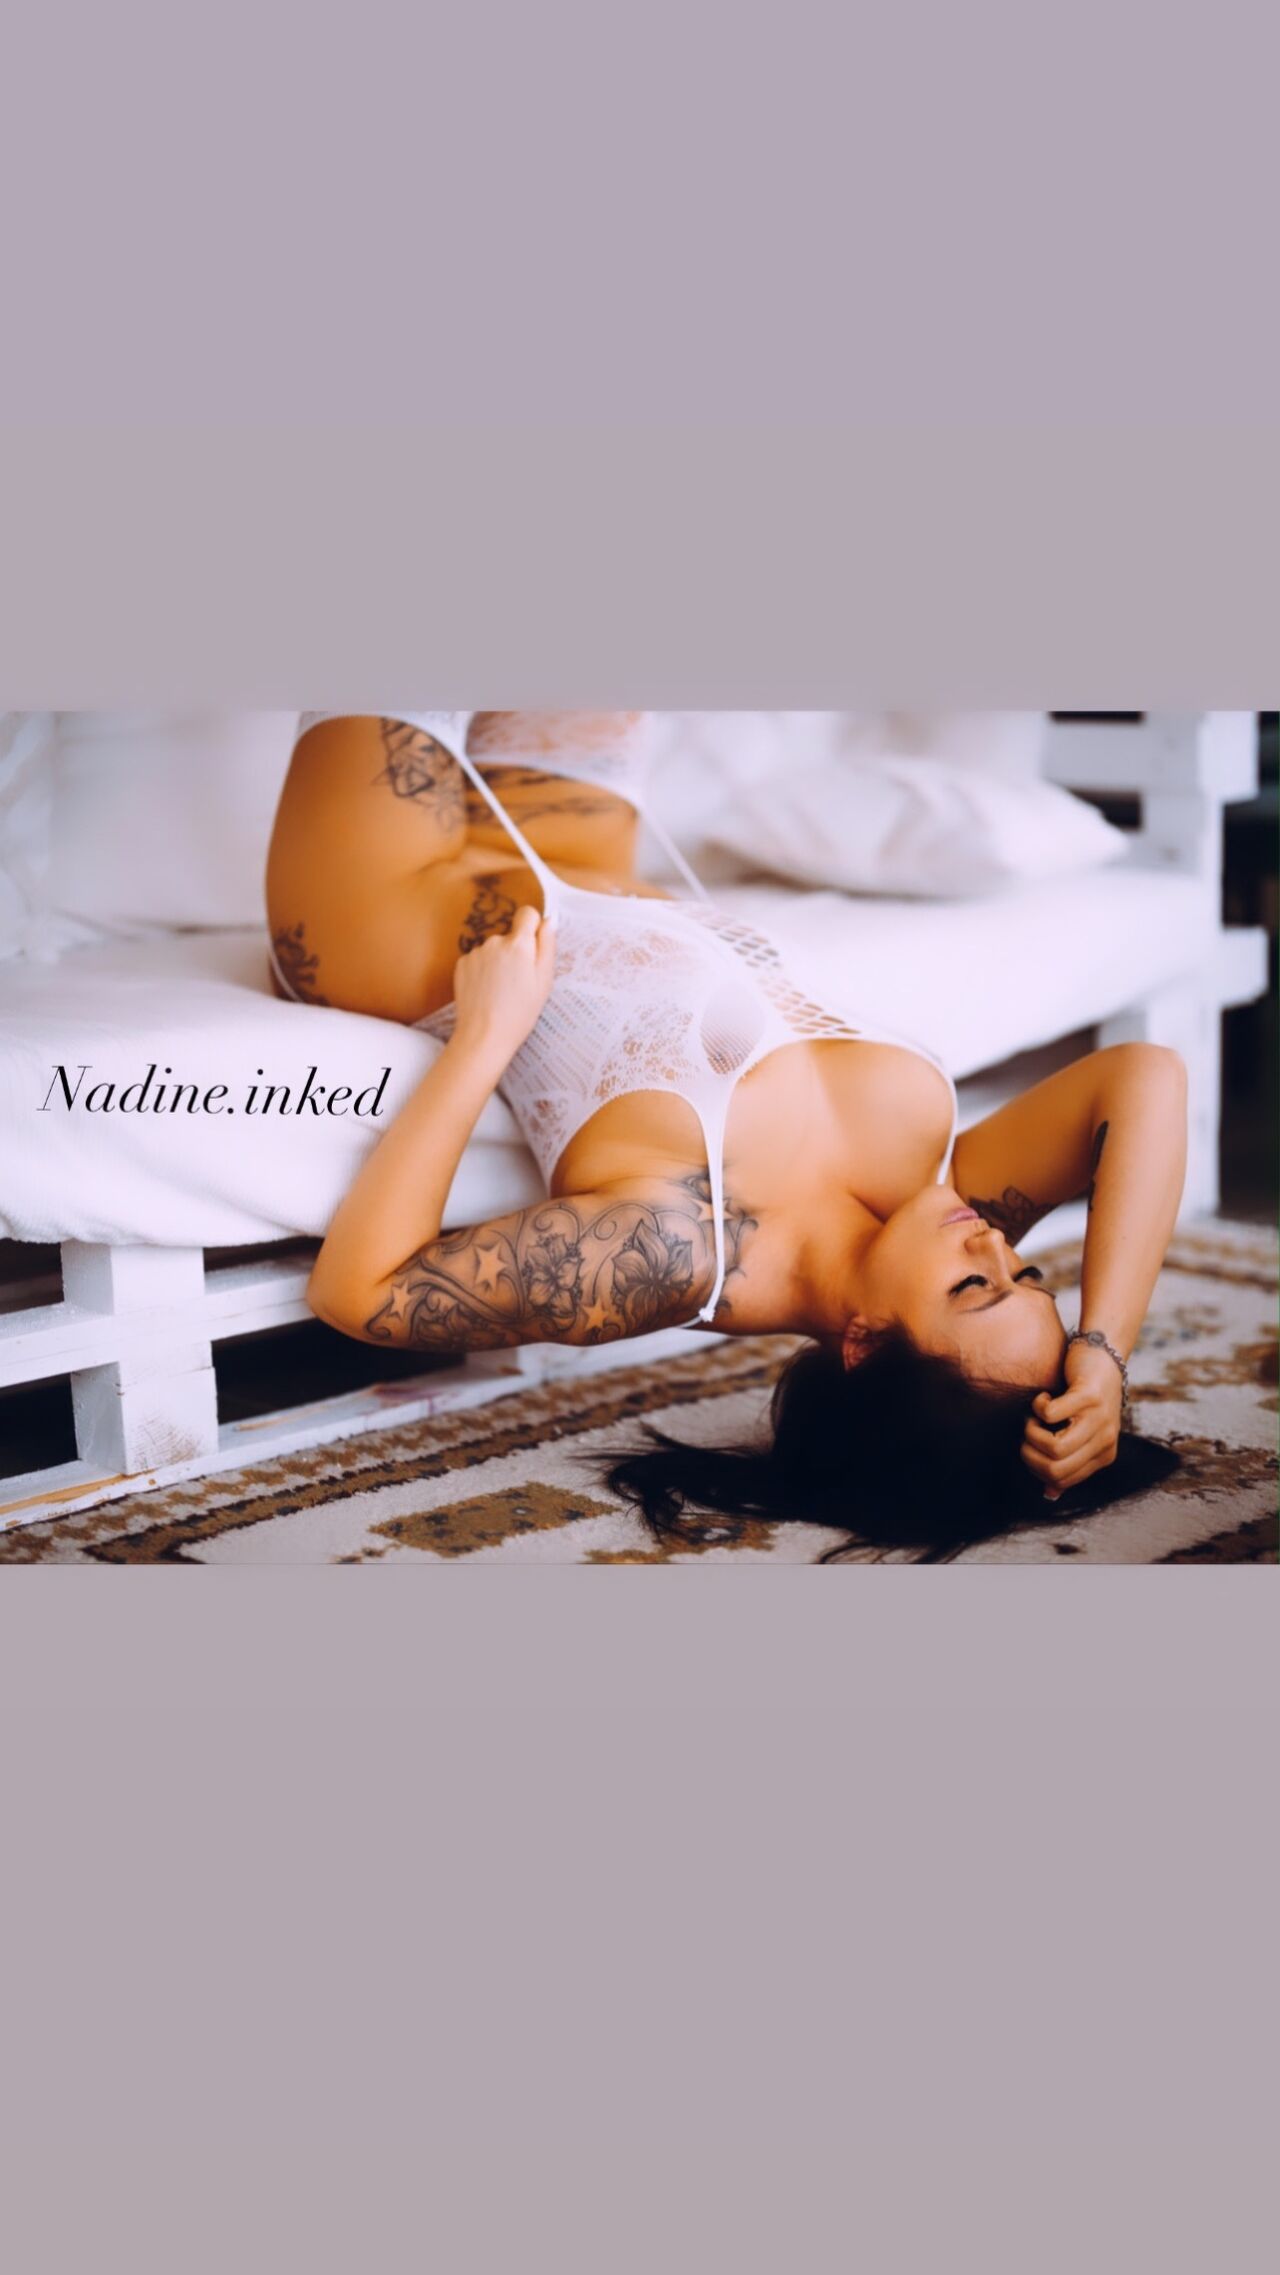 See Nadine.inked - Teaser💎🇩🇪 profile